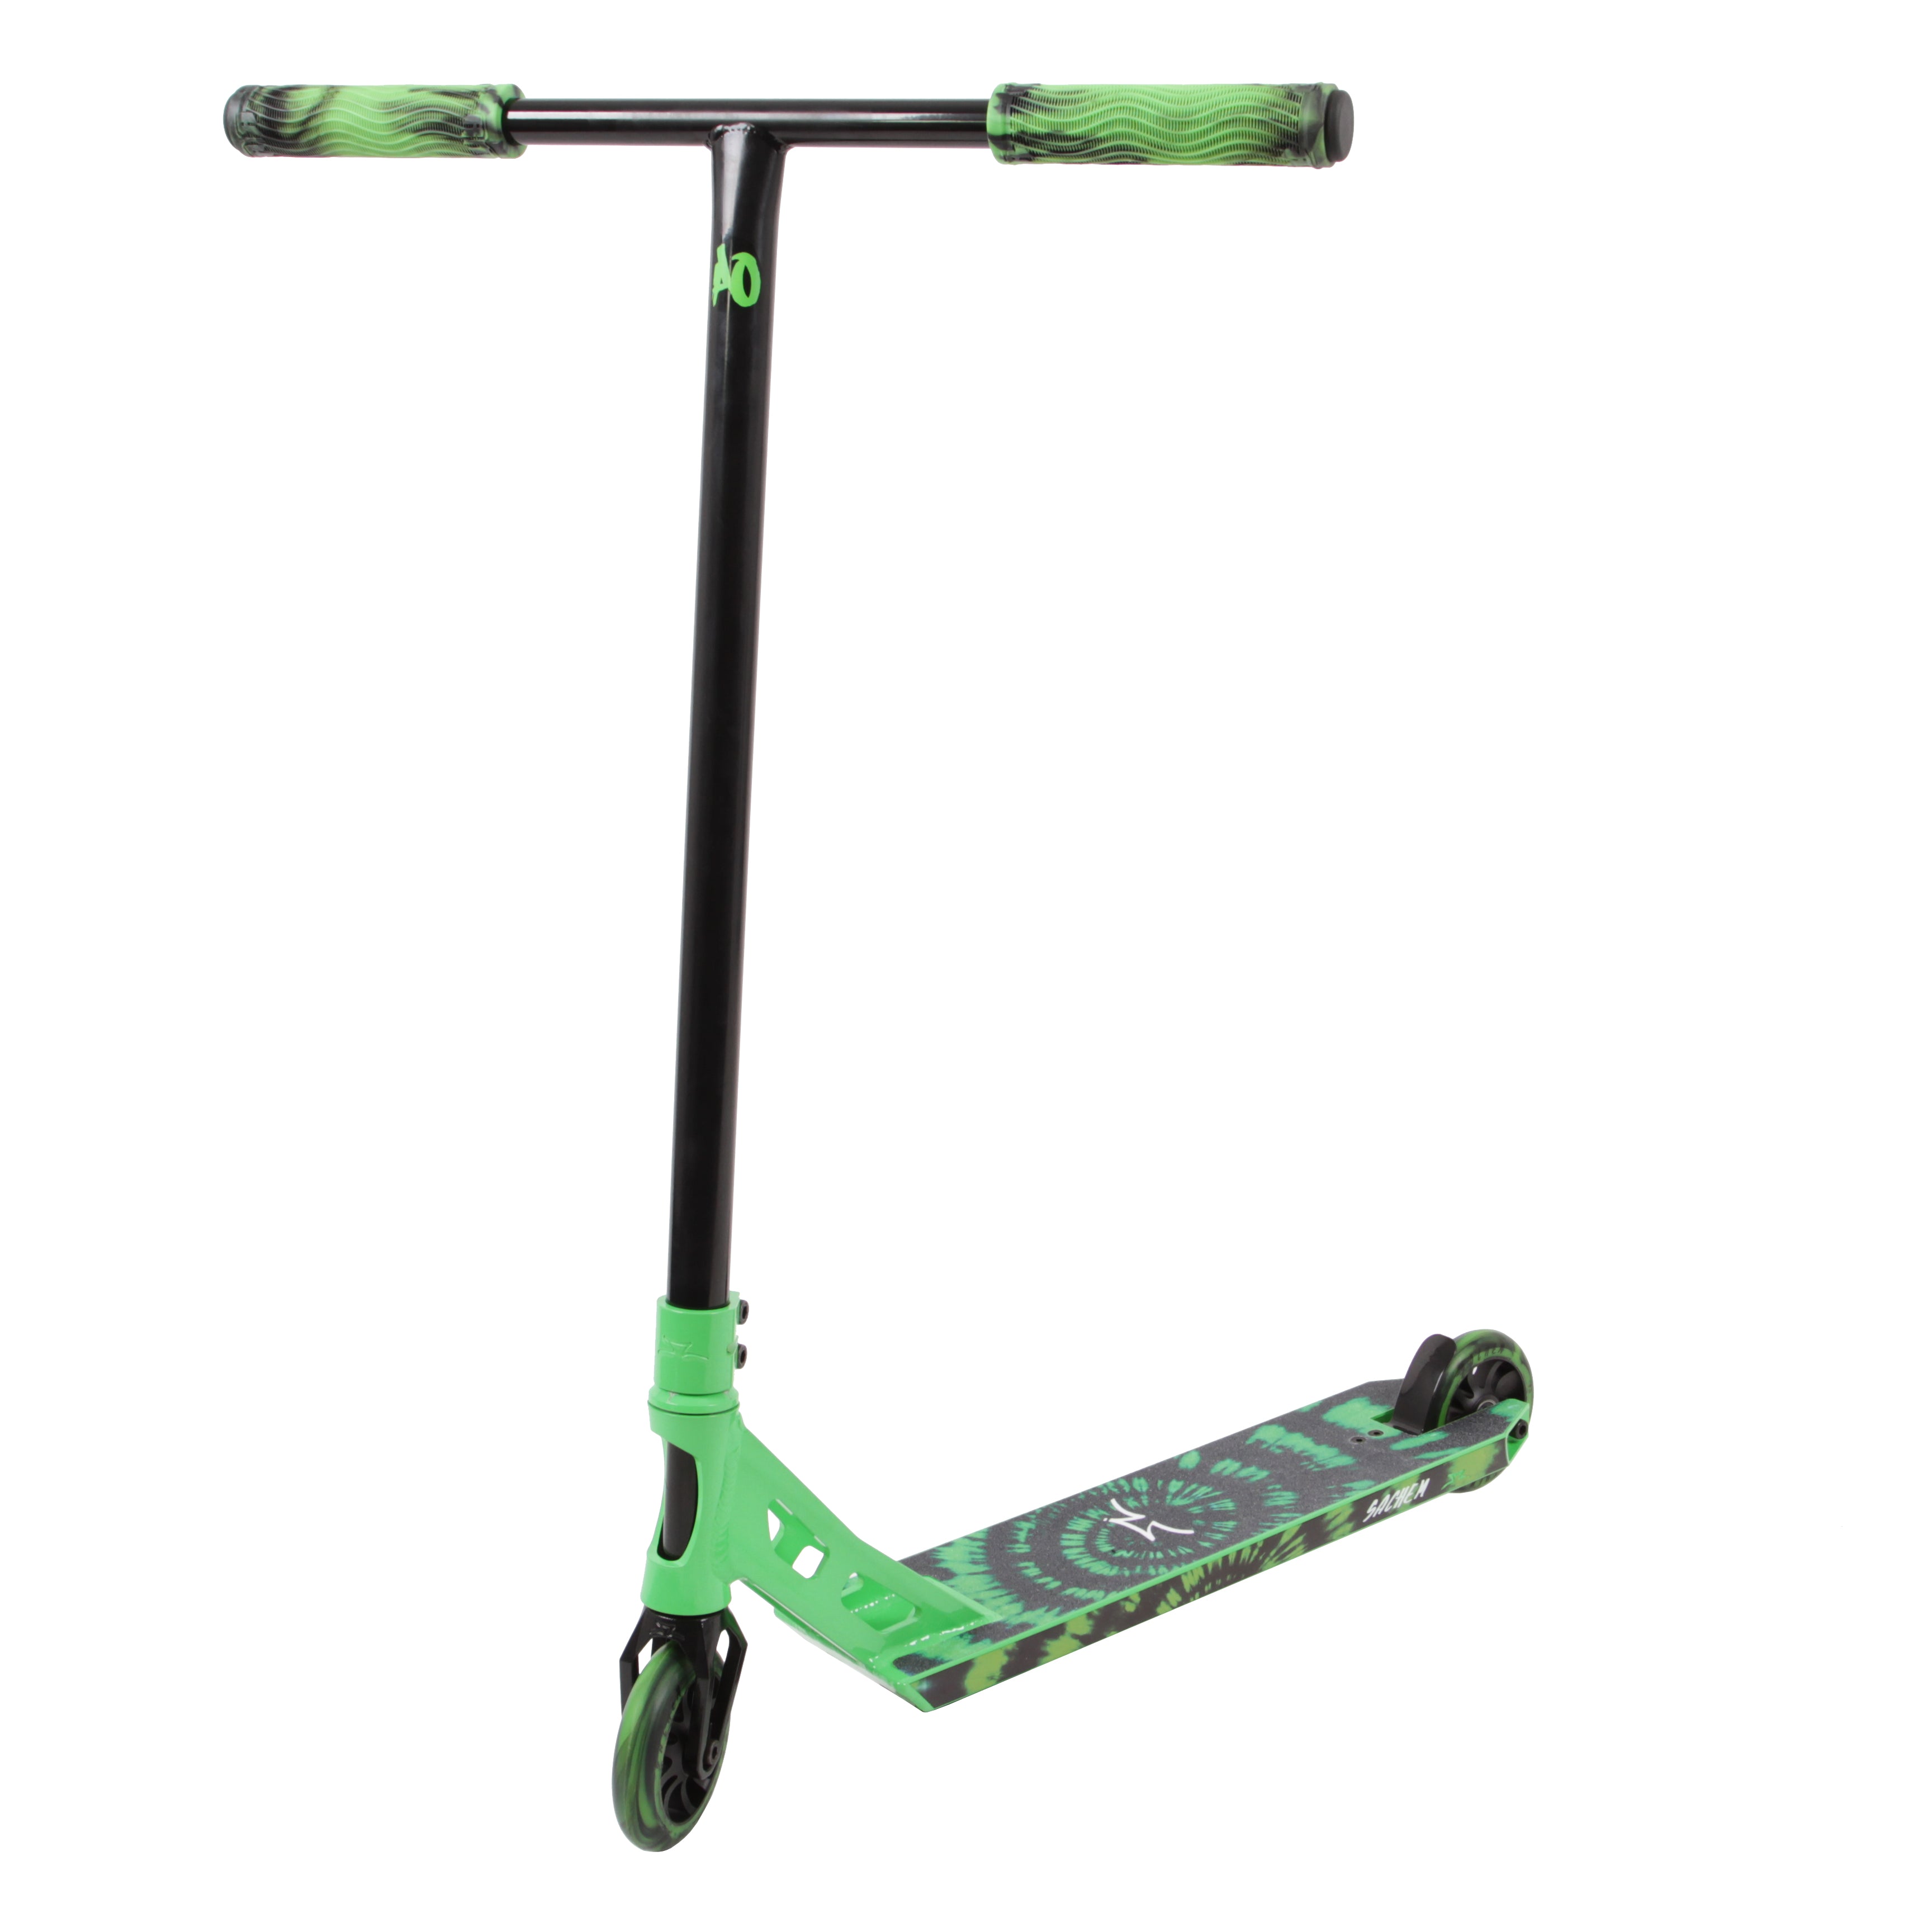 AO Sachem XT - Scooter Complete Green